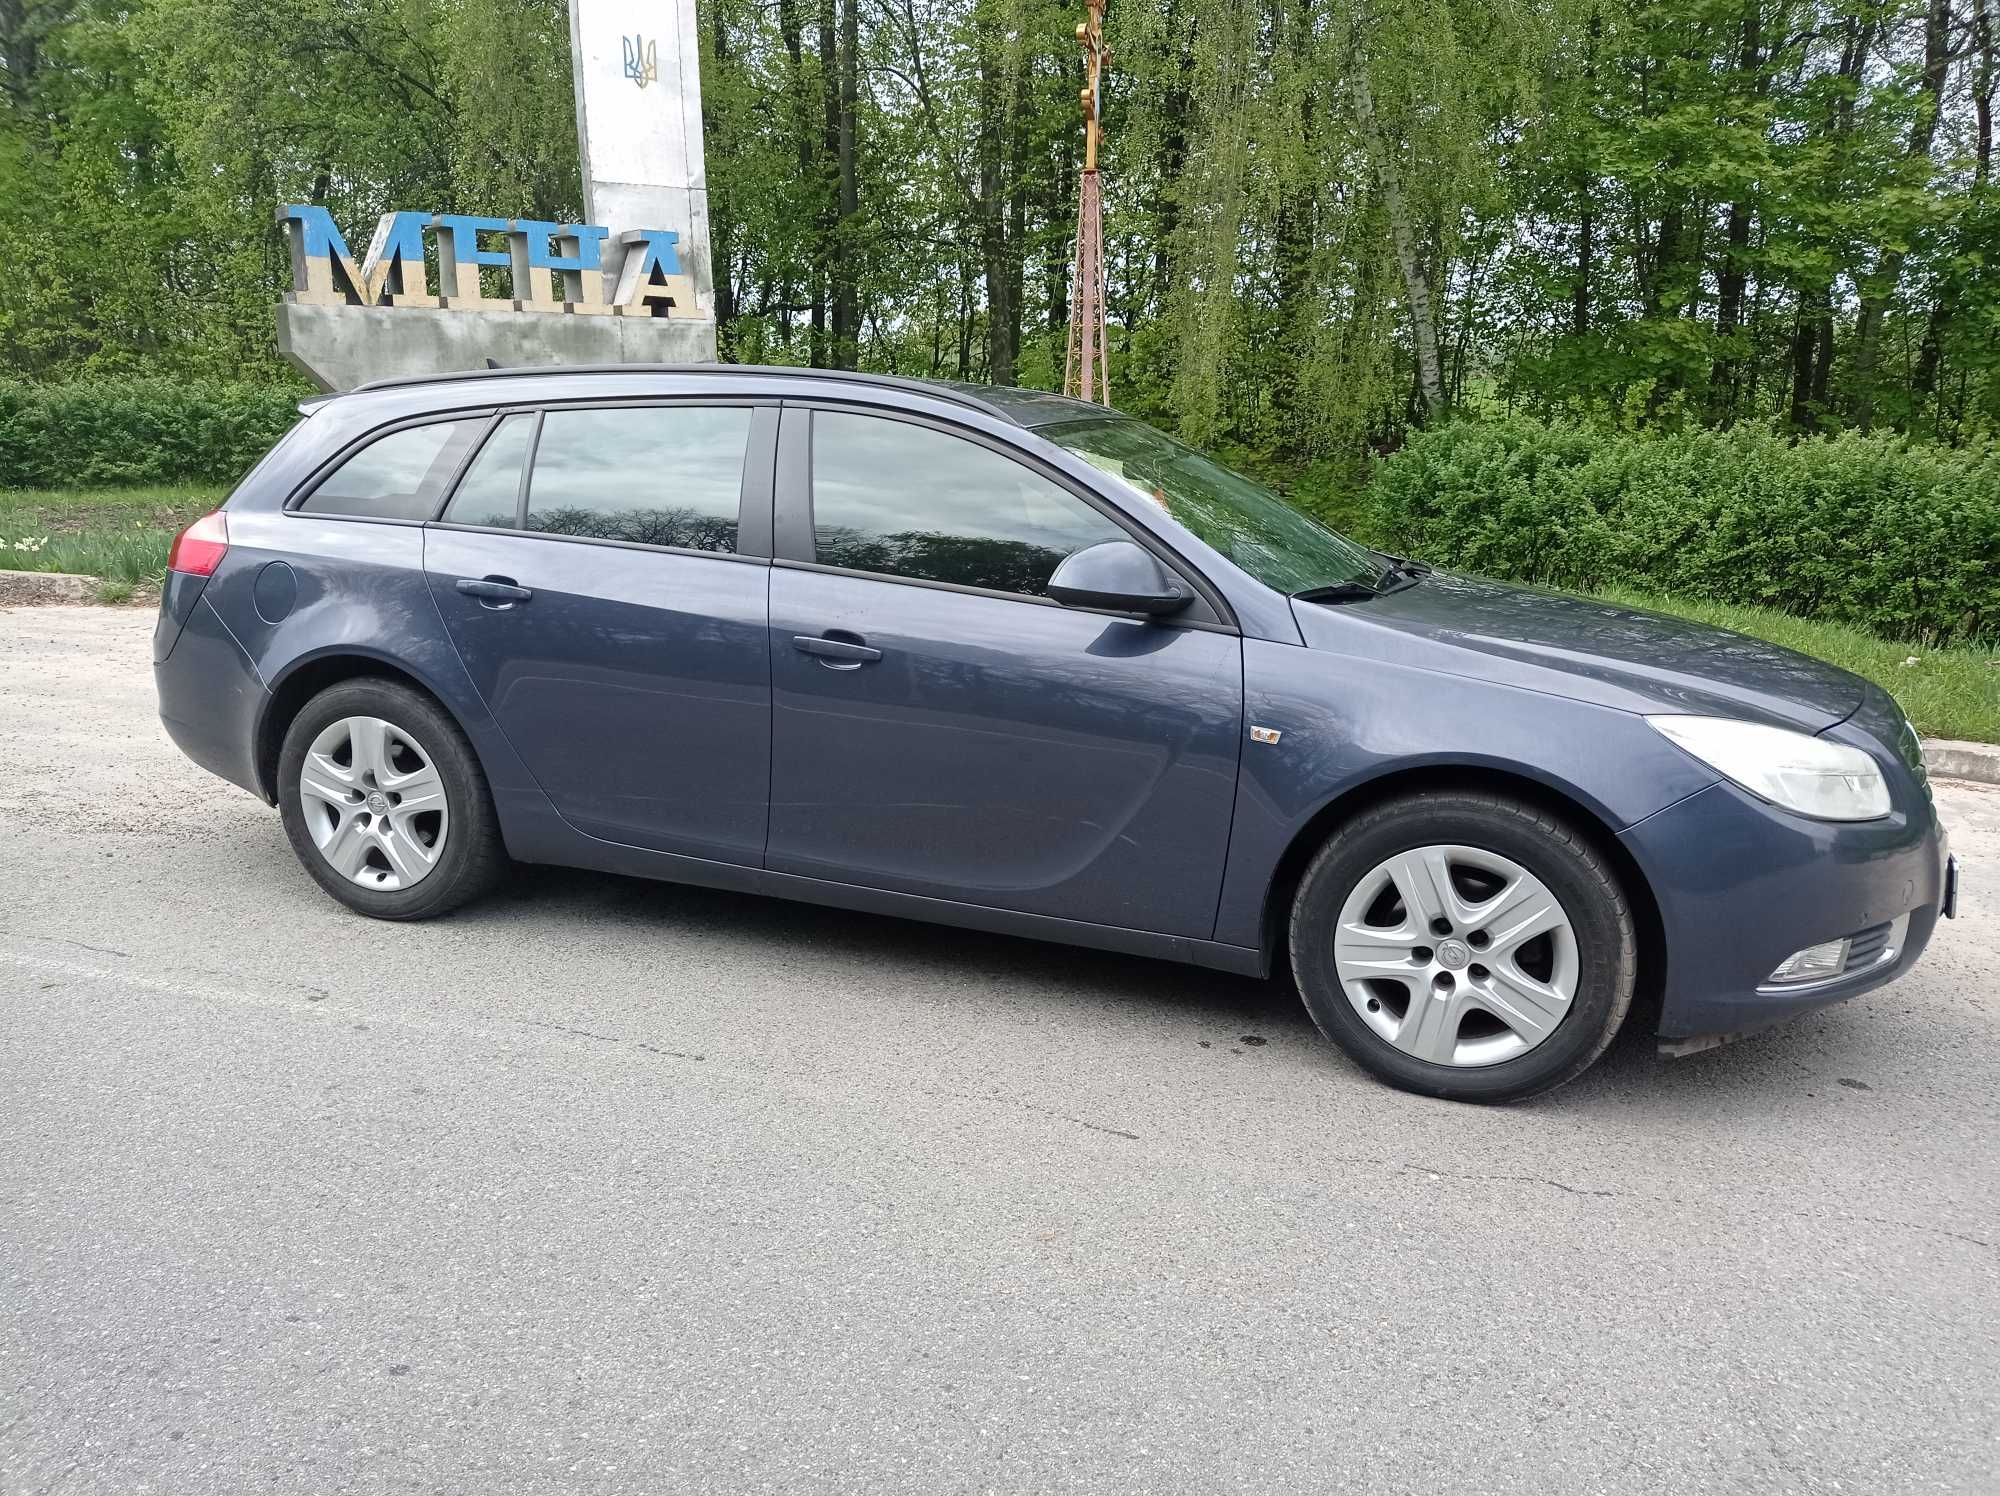 Продам Opel Insignia 2.0 SPORTS TOURER в Гарному стані. 2010рік